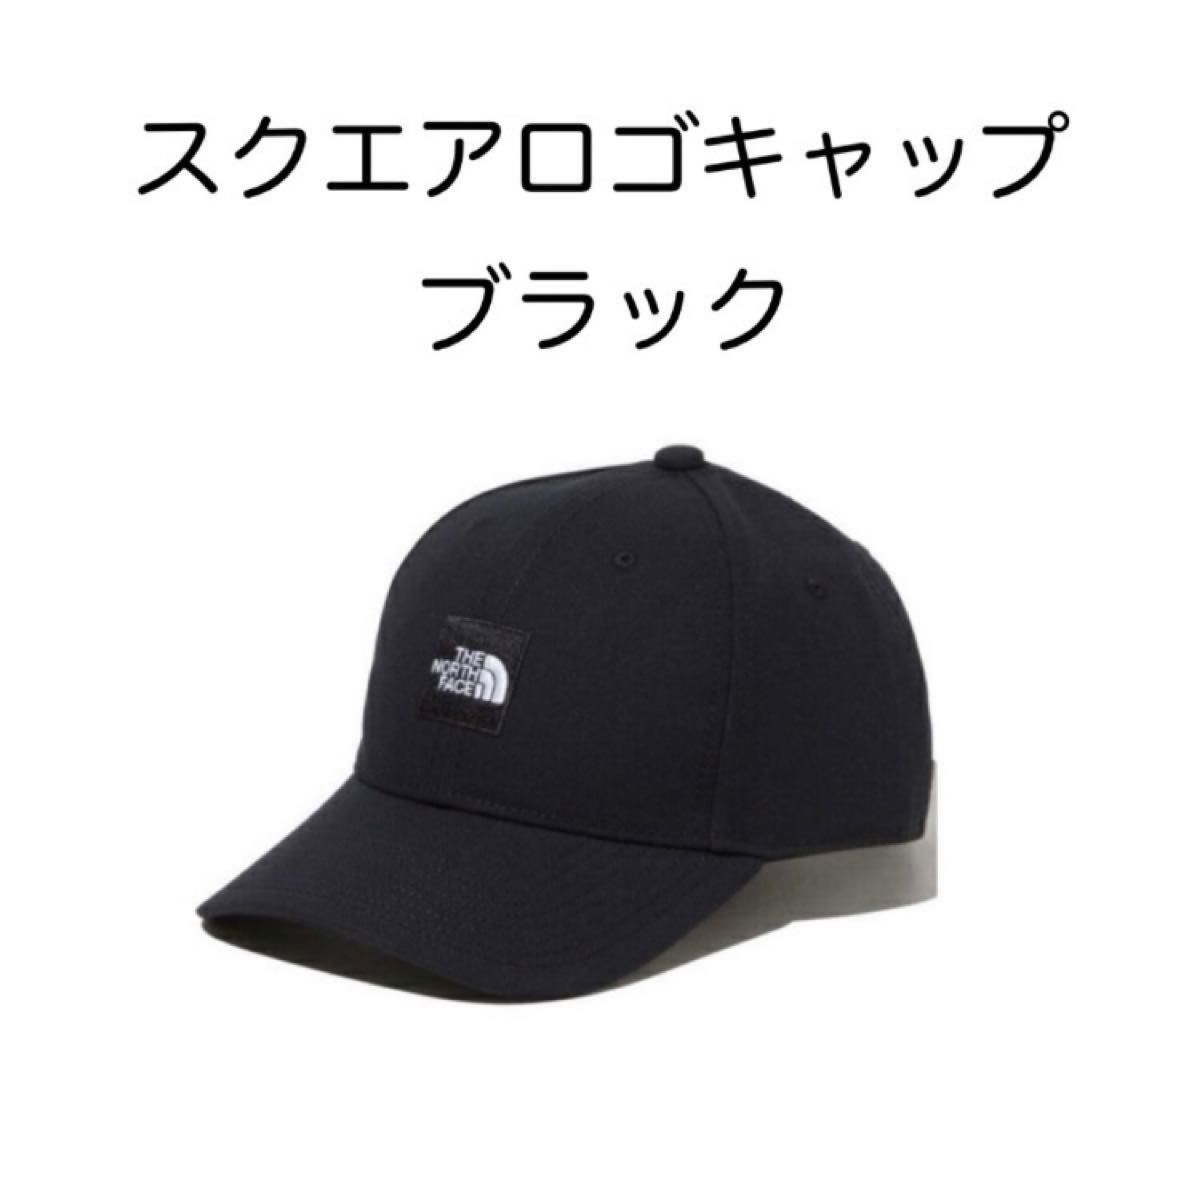 スクエアロゴキャップ ノースフェイス 帽子 NN02334 ブラック